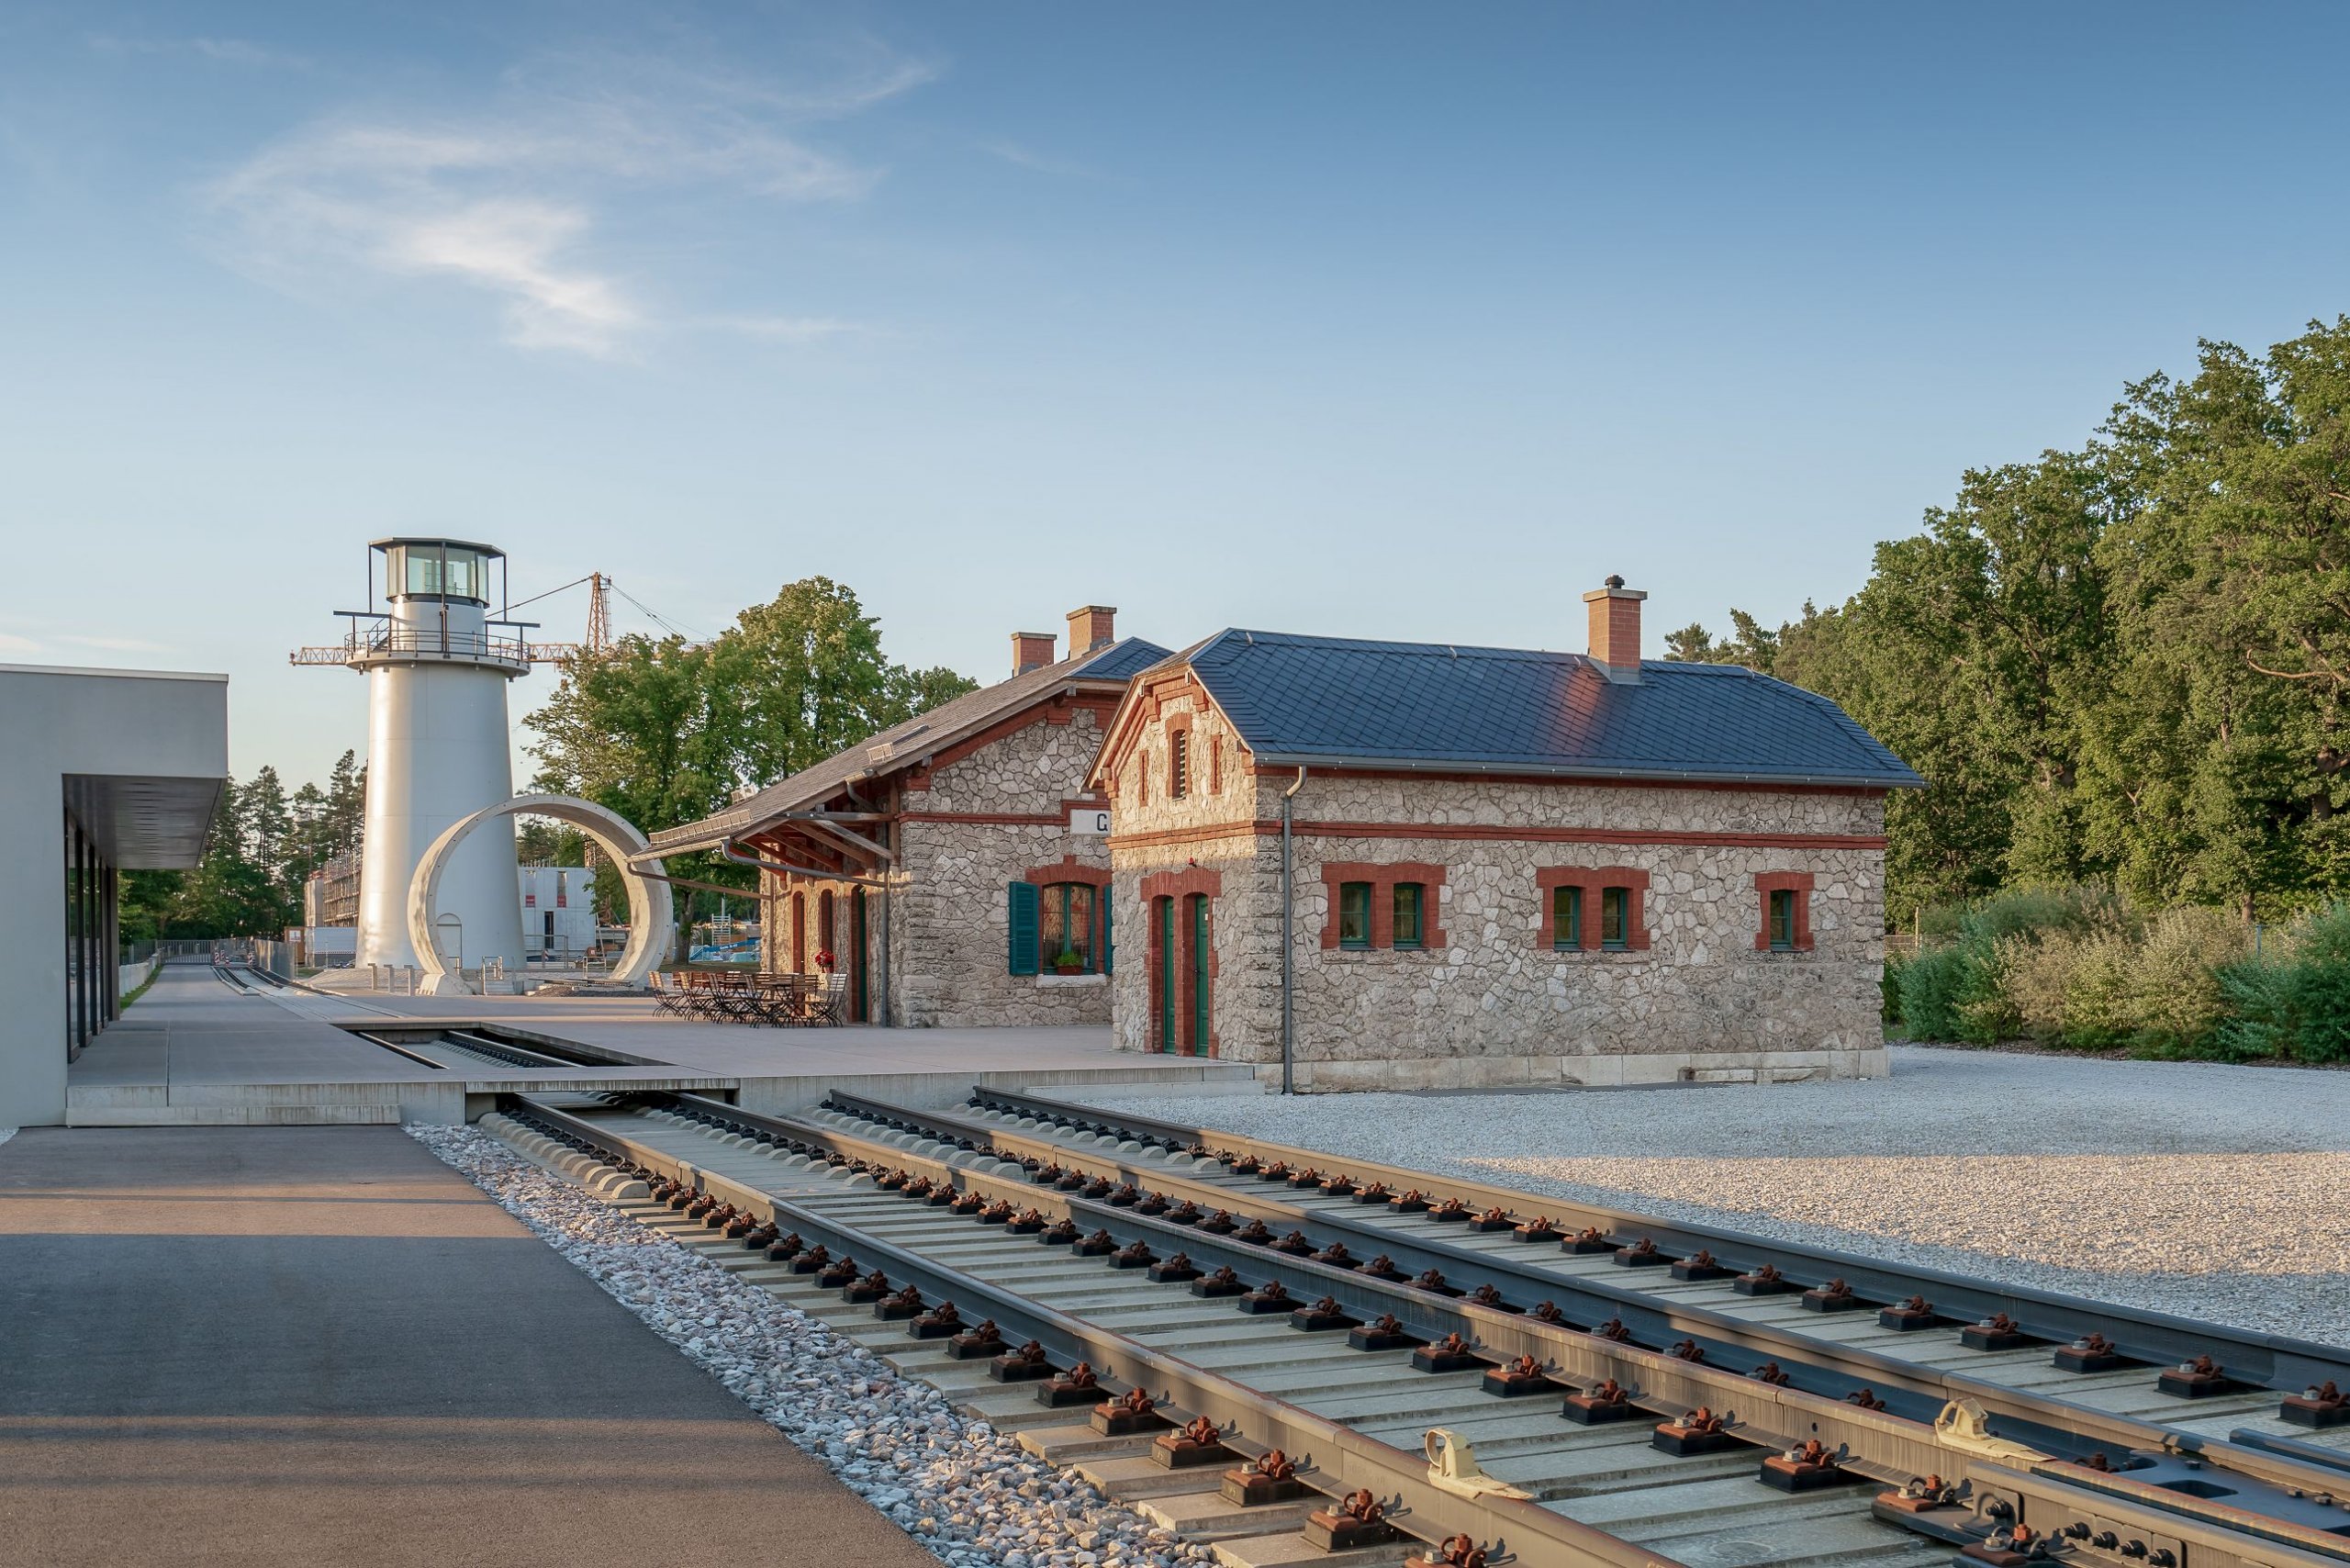 Bild: Das historische Bahnhofsgebäude in der Max Bögl Wissensakademie in Sengenthal, Foto: ver.de landschaftsarchitektur